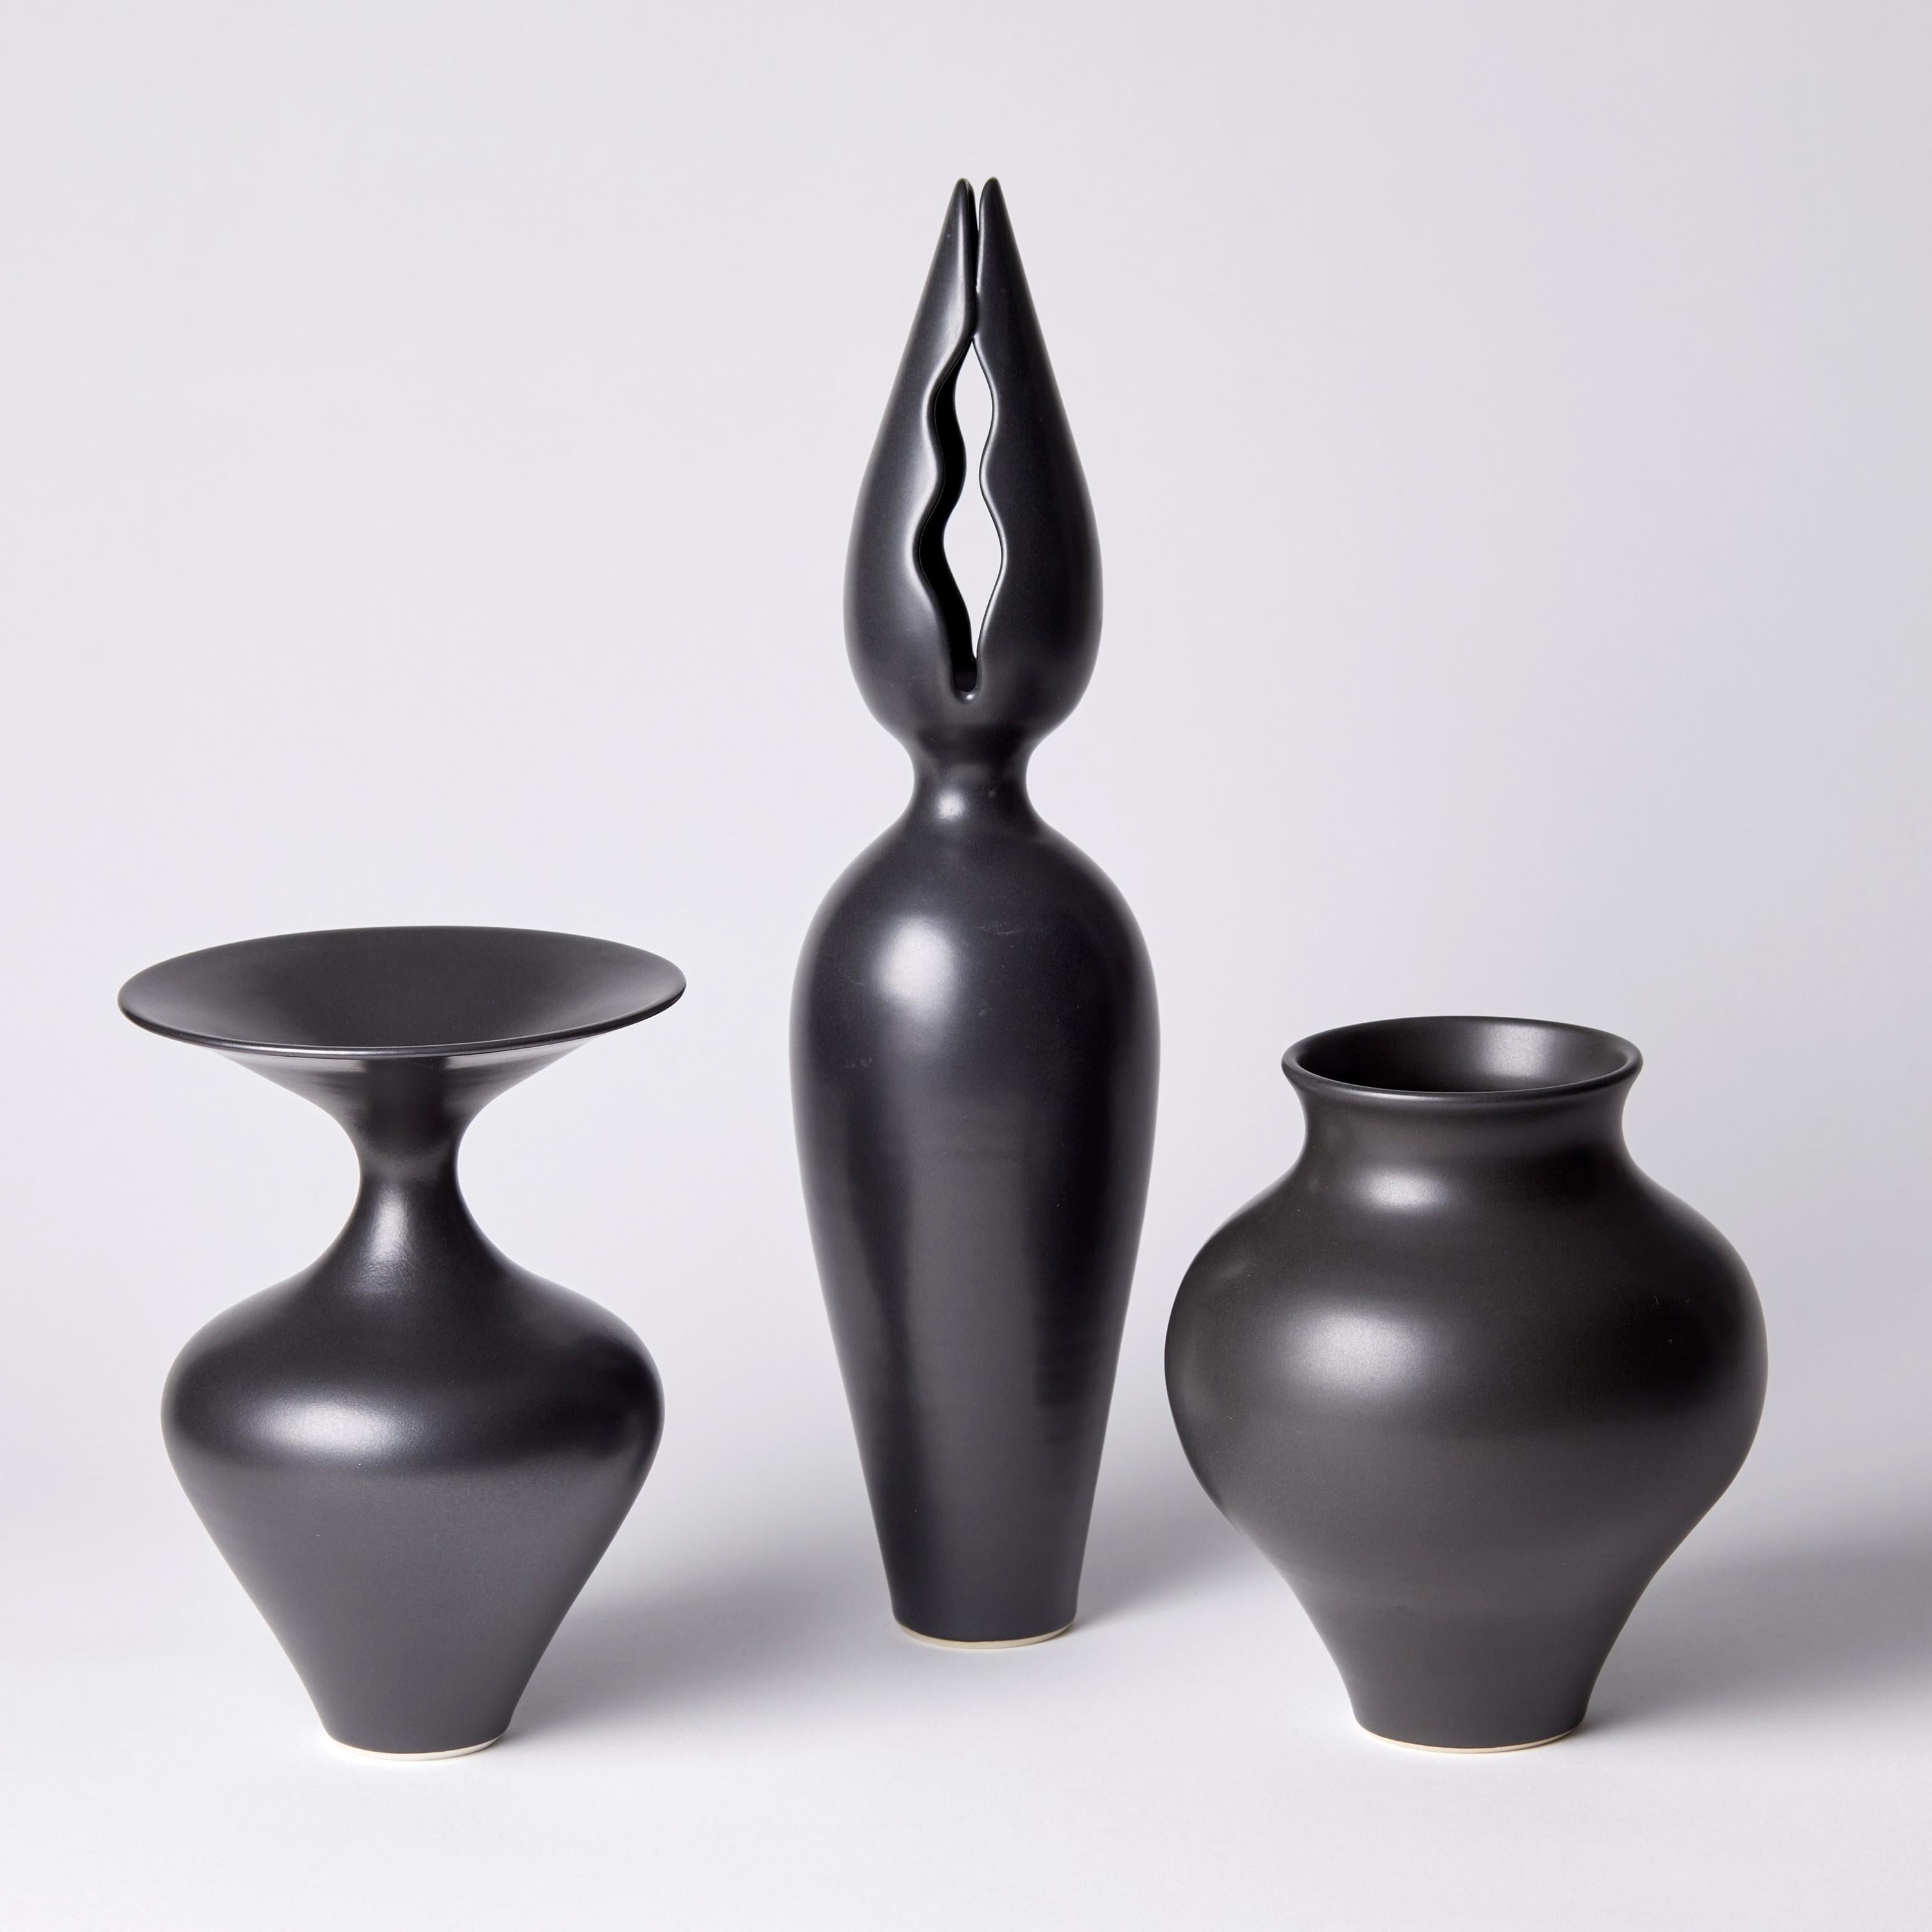 Hand-Crafted Balluster Vase, a unique black / ebony porcelain vase by Vivienne Foley